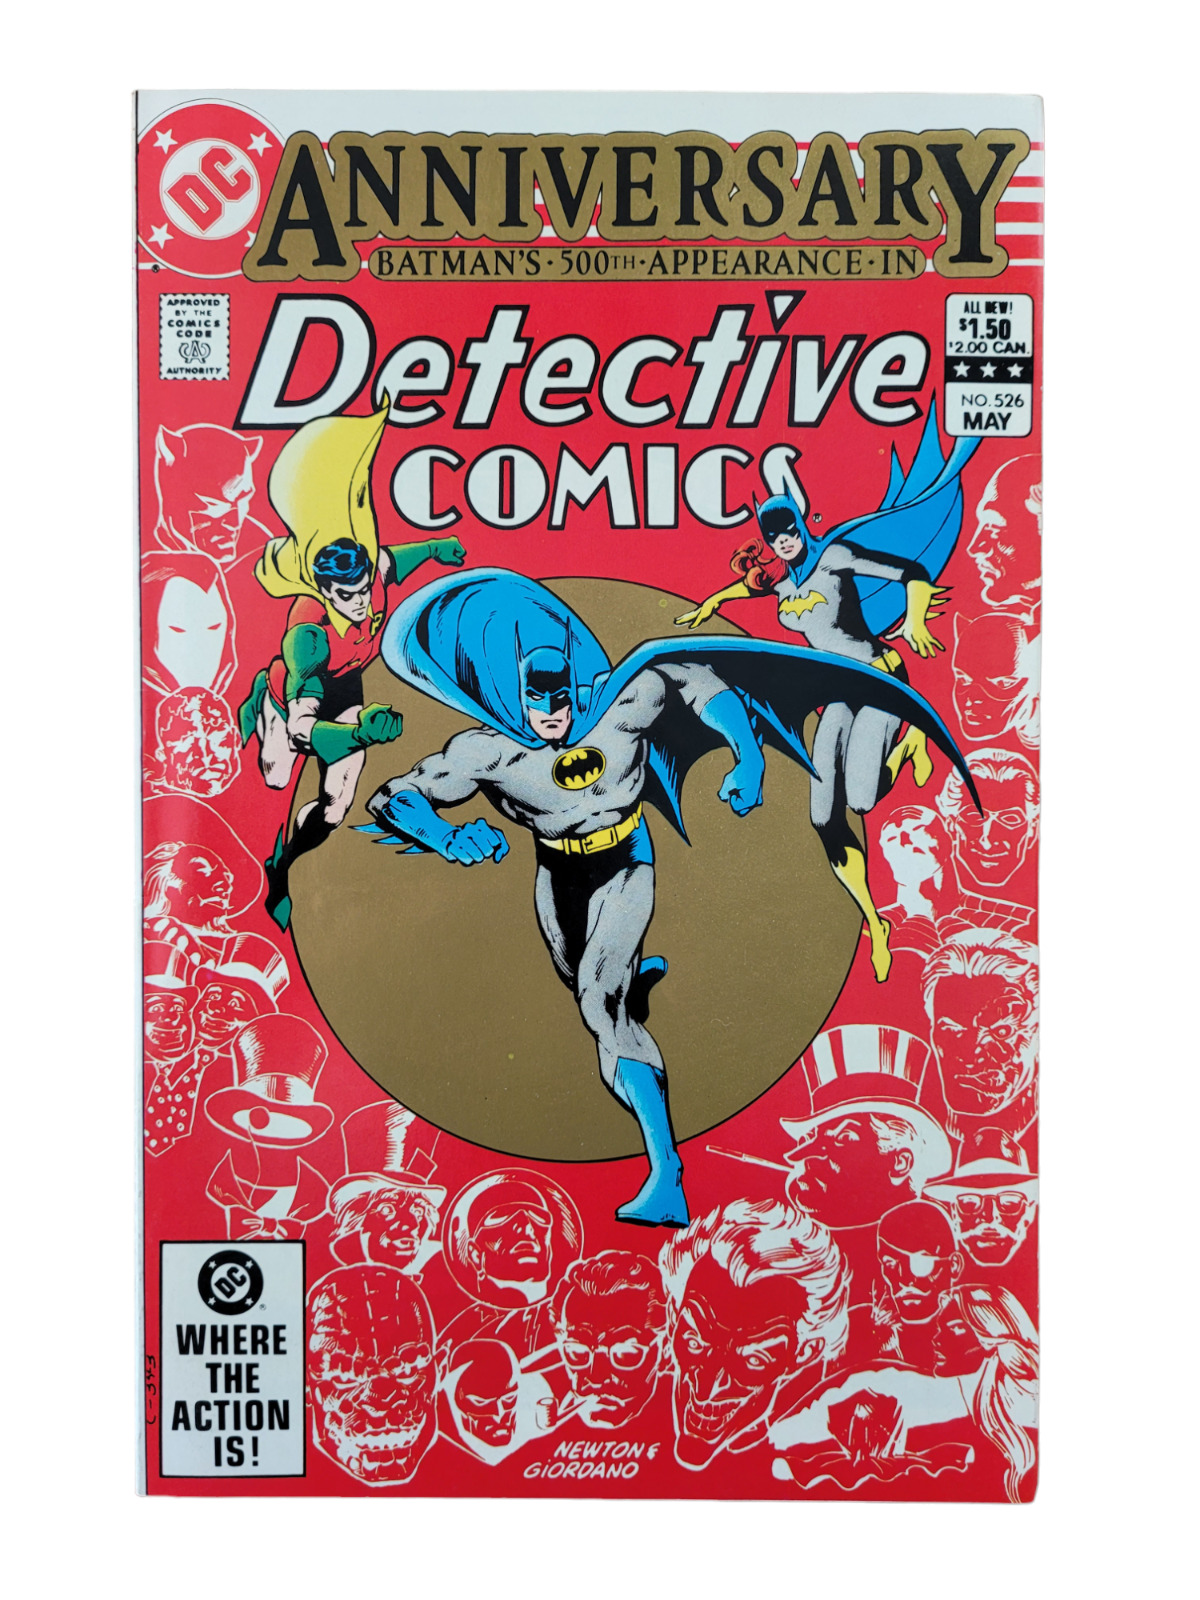 Detective Comics #526 Batman JOKER DC Comics 1983 VF+ RAW VINTAGE BRONZE AGE